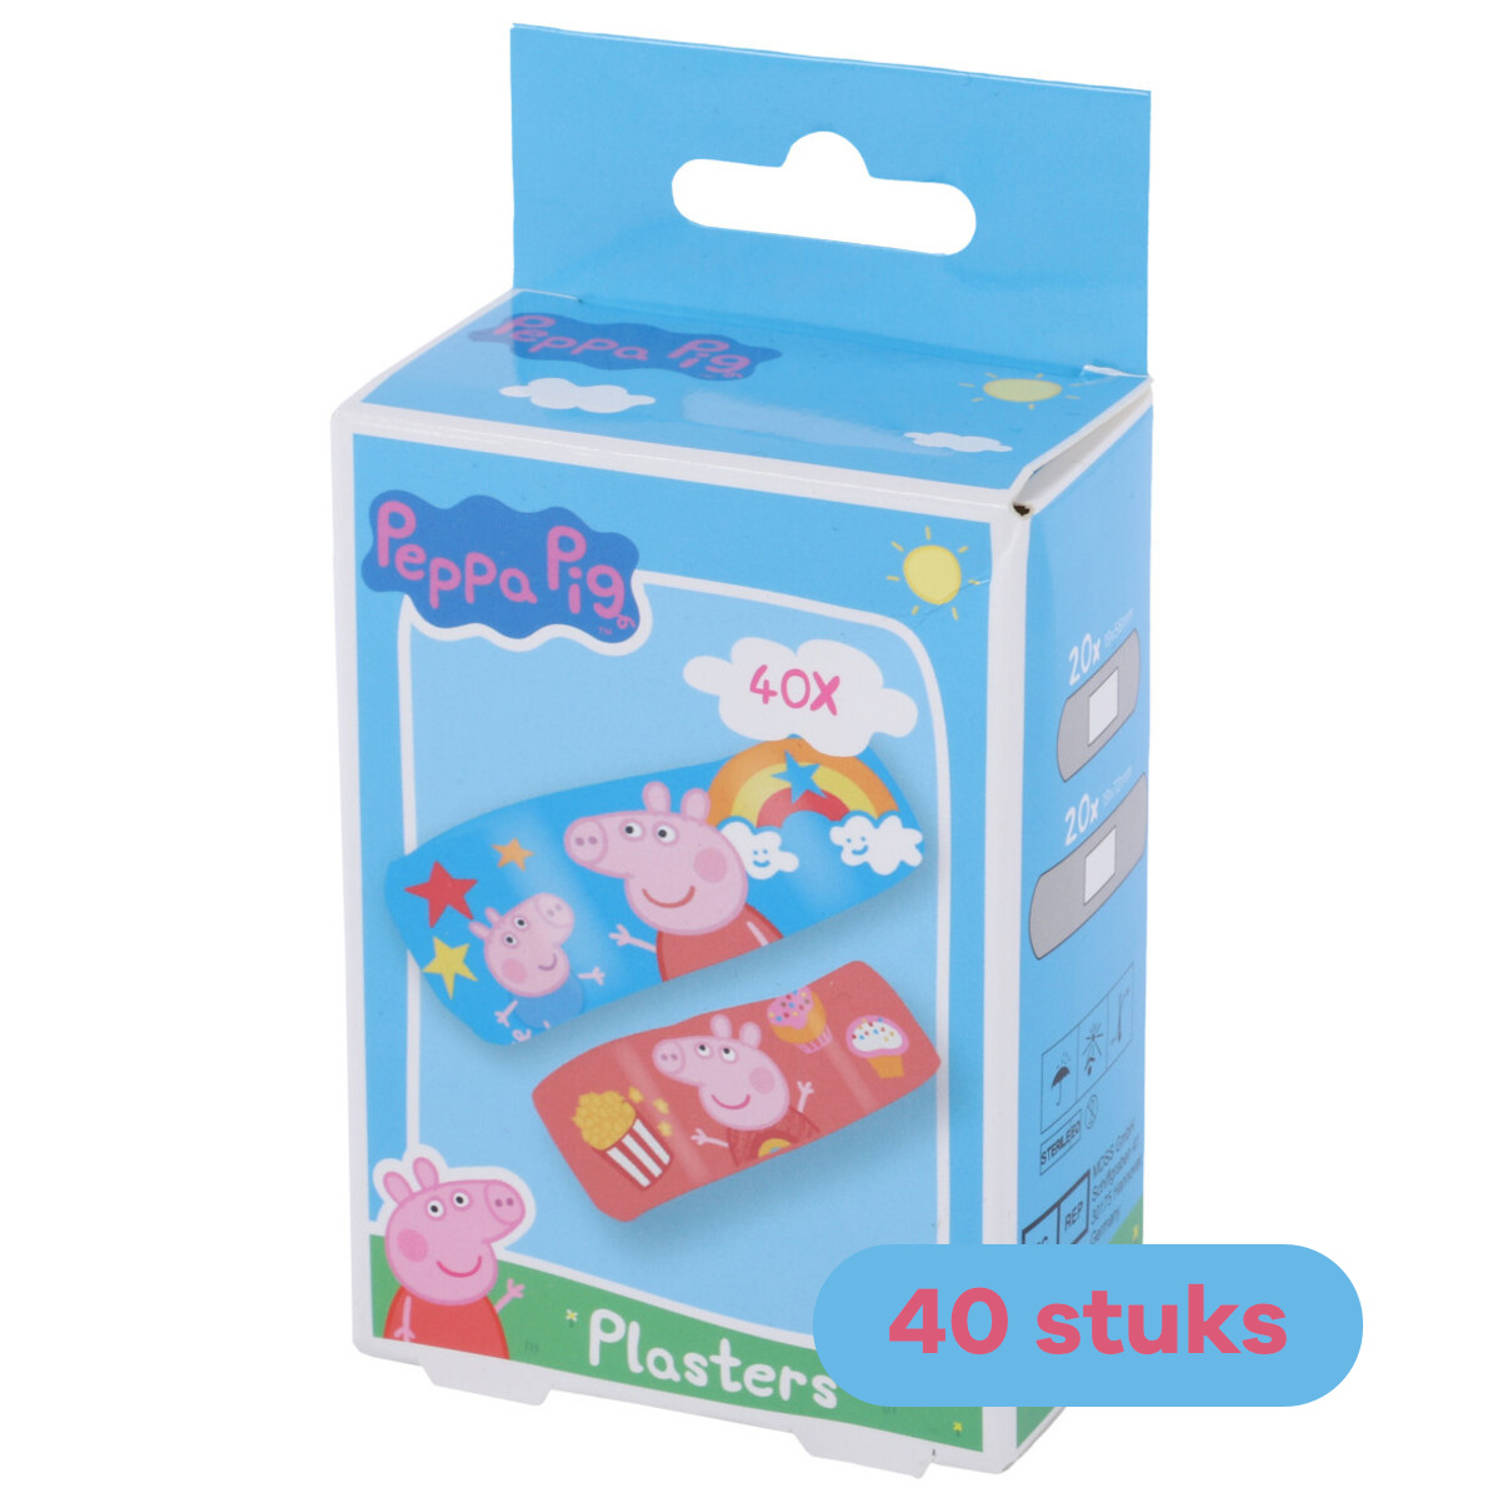 Peppa Pig - Pleisters voor kinderen - Waterproof - 40 stuks